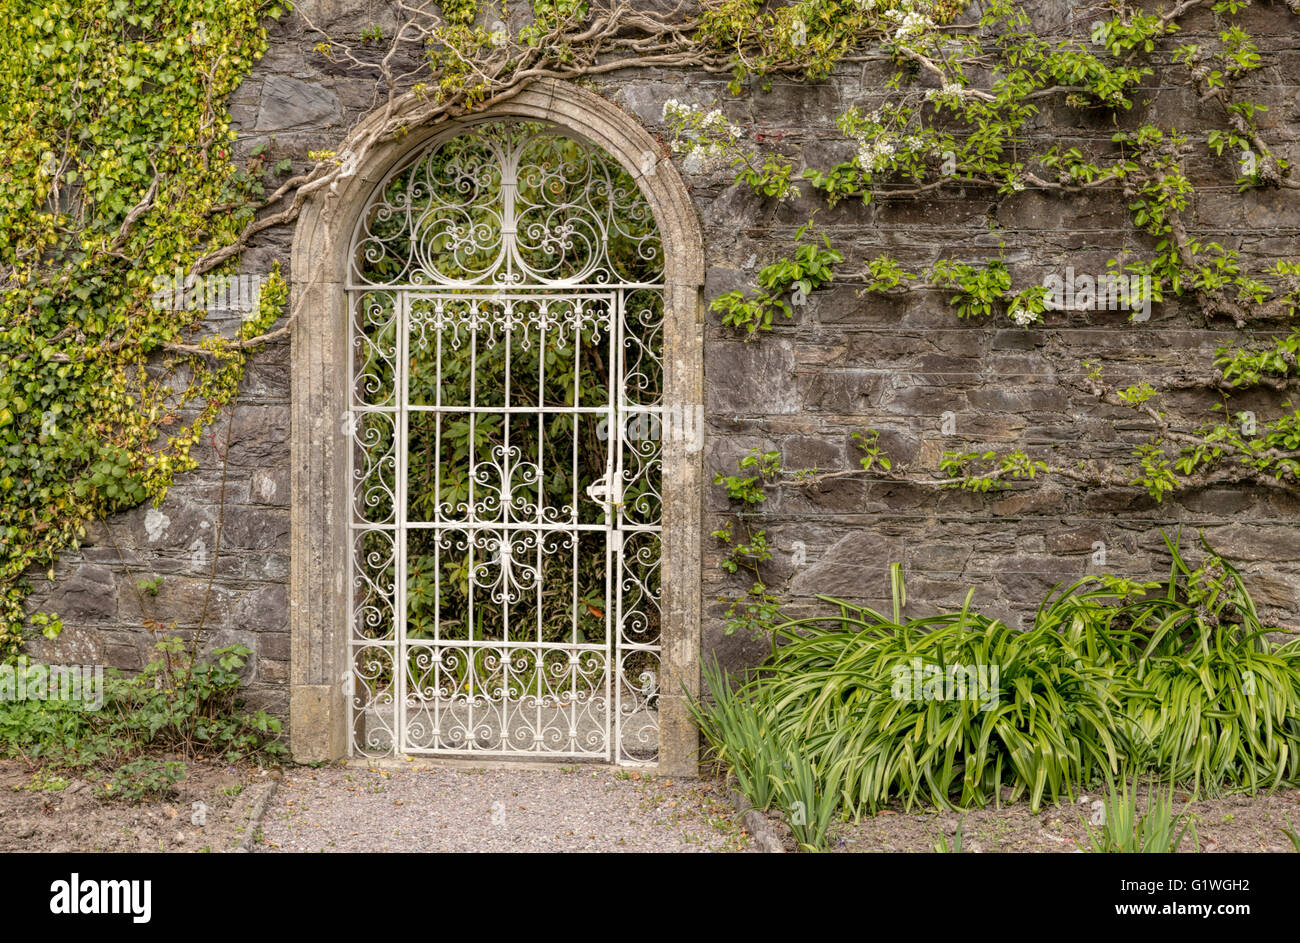 Ornate gate in The Walled Garden on Garnish Island, or Illnaculin, in Bantry Bay, Beara Peninsula, County Cork, Ireland. Stock Photo